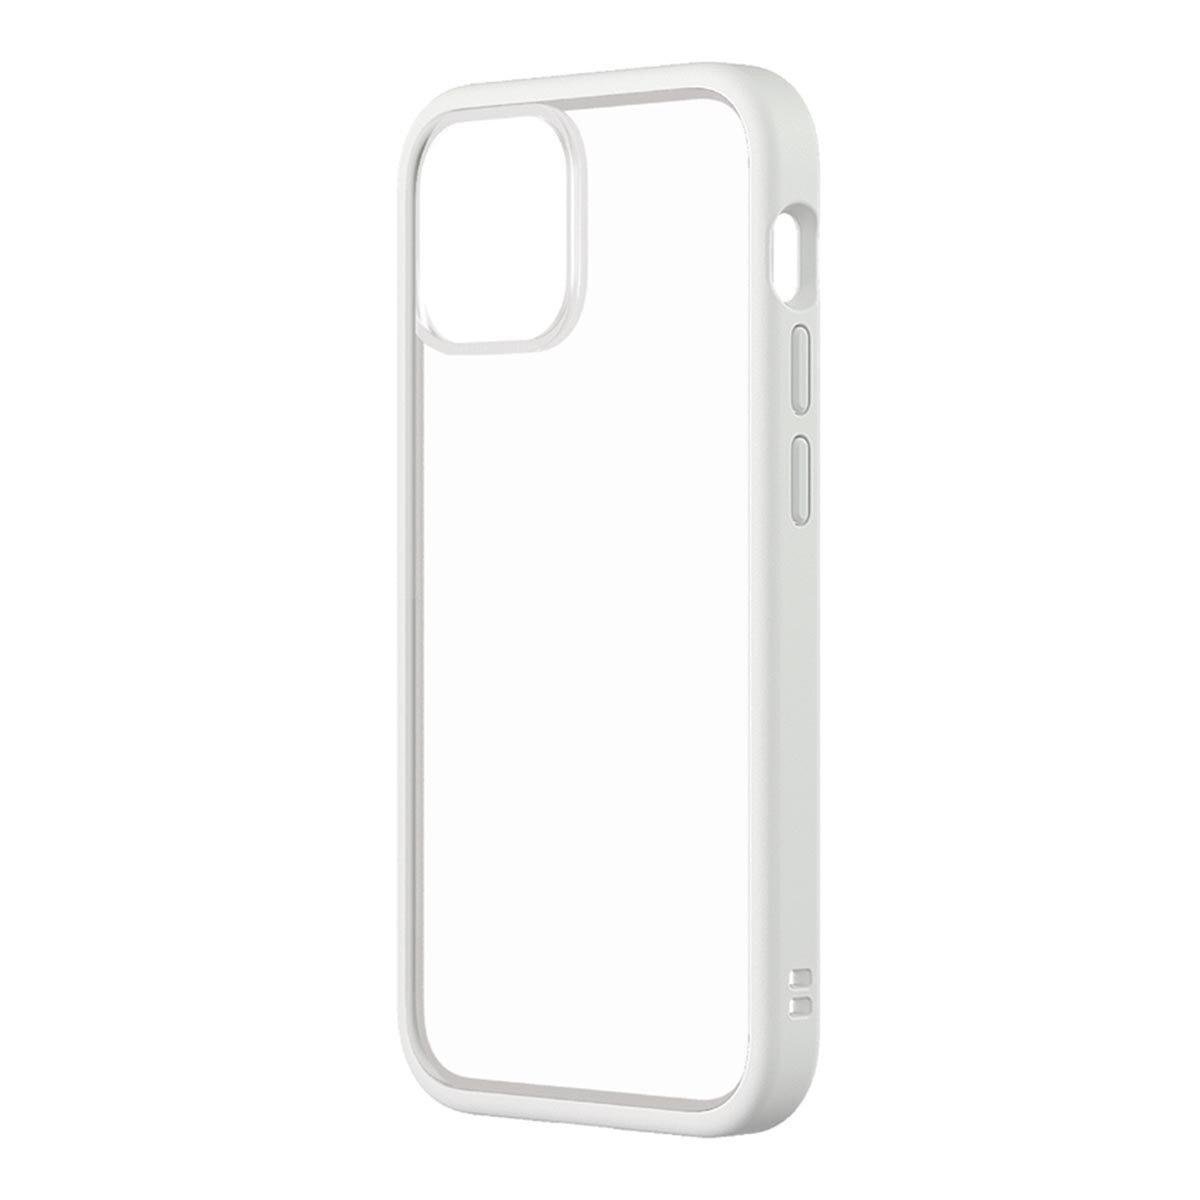 犀牛盾 iPhone 13 mini MOD NX 防摔手機殼 + 9H 3D 滿版螢幕玻璃保護貼